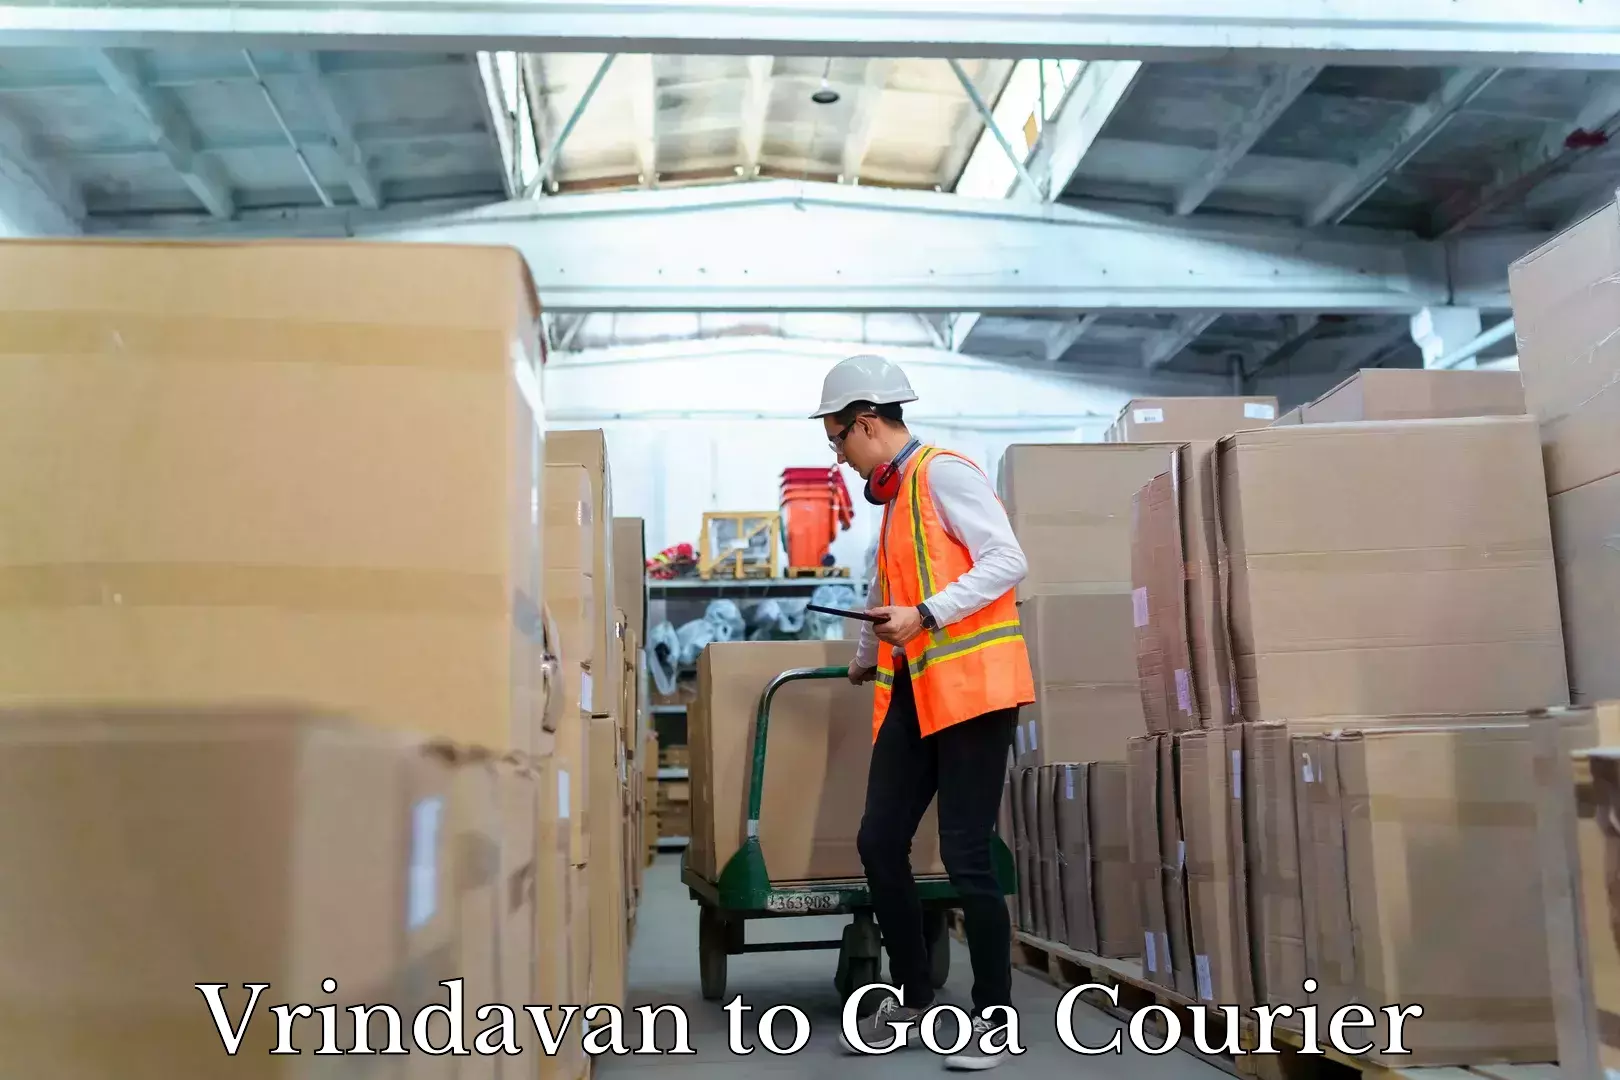 Urban courier service Vrindavan to Goa